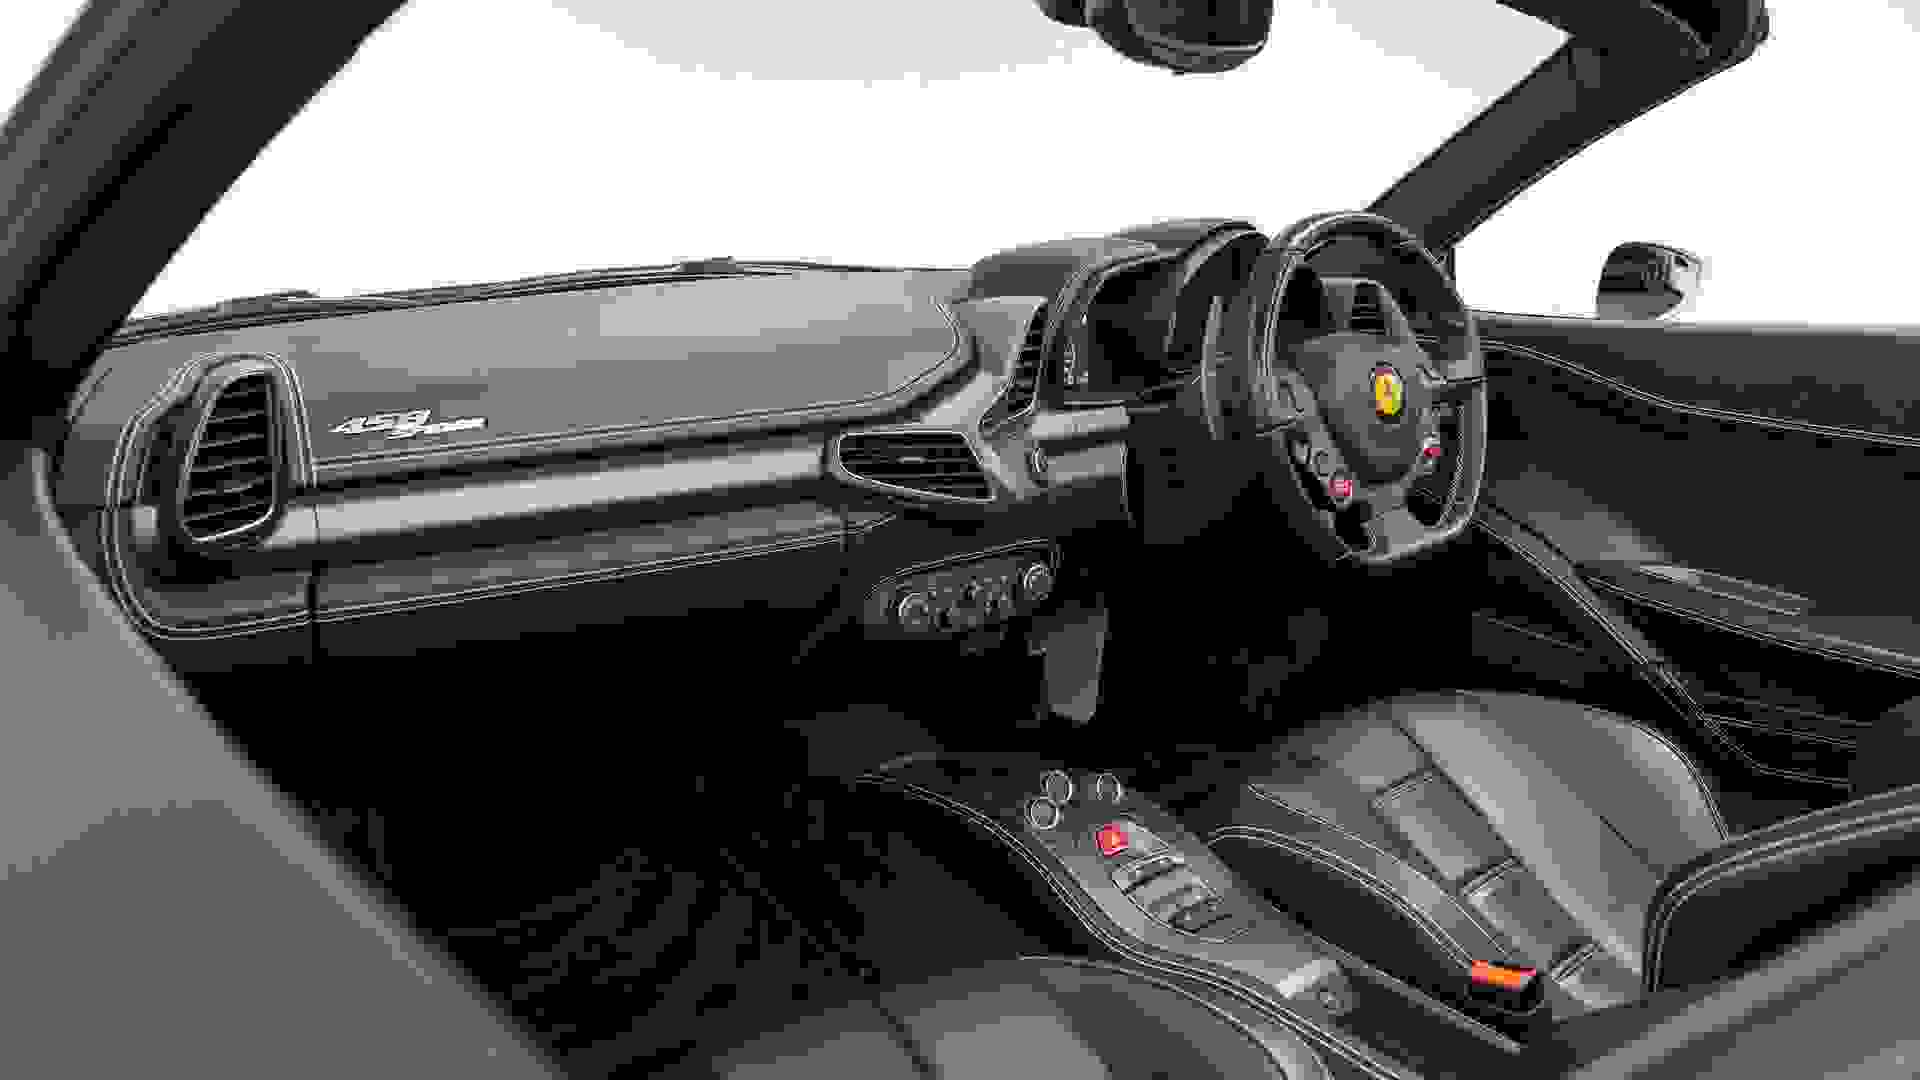 Ferrari 458 Photo b78f9699-6a61-4c01-9a6f-c3a9df7d48d8.jpg